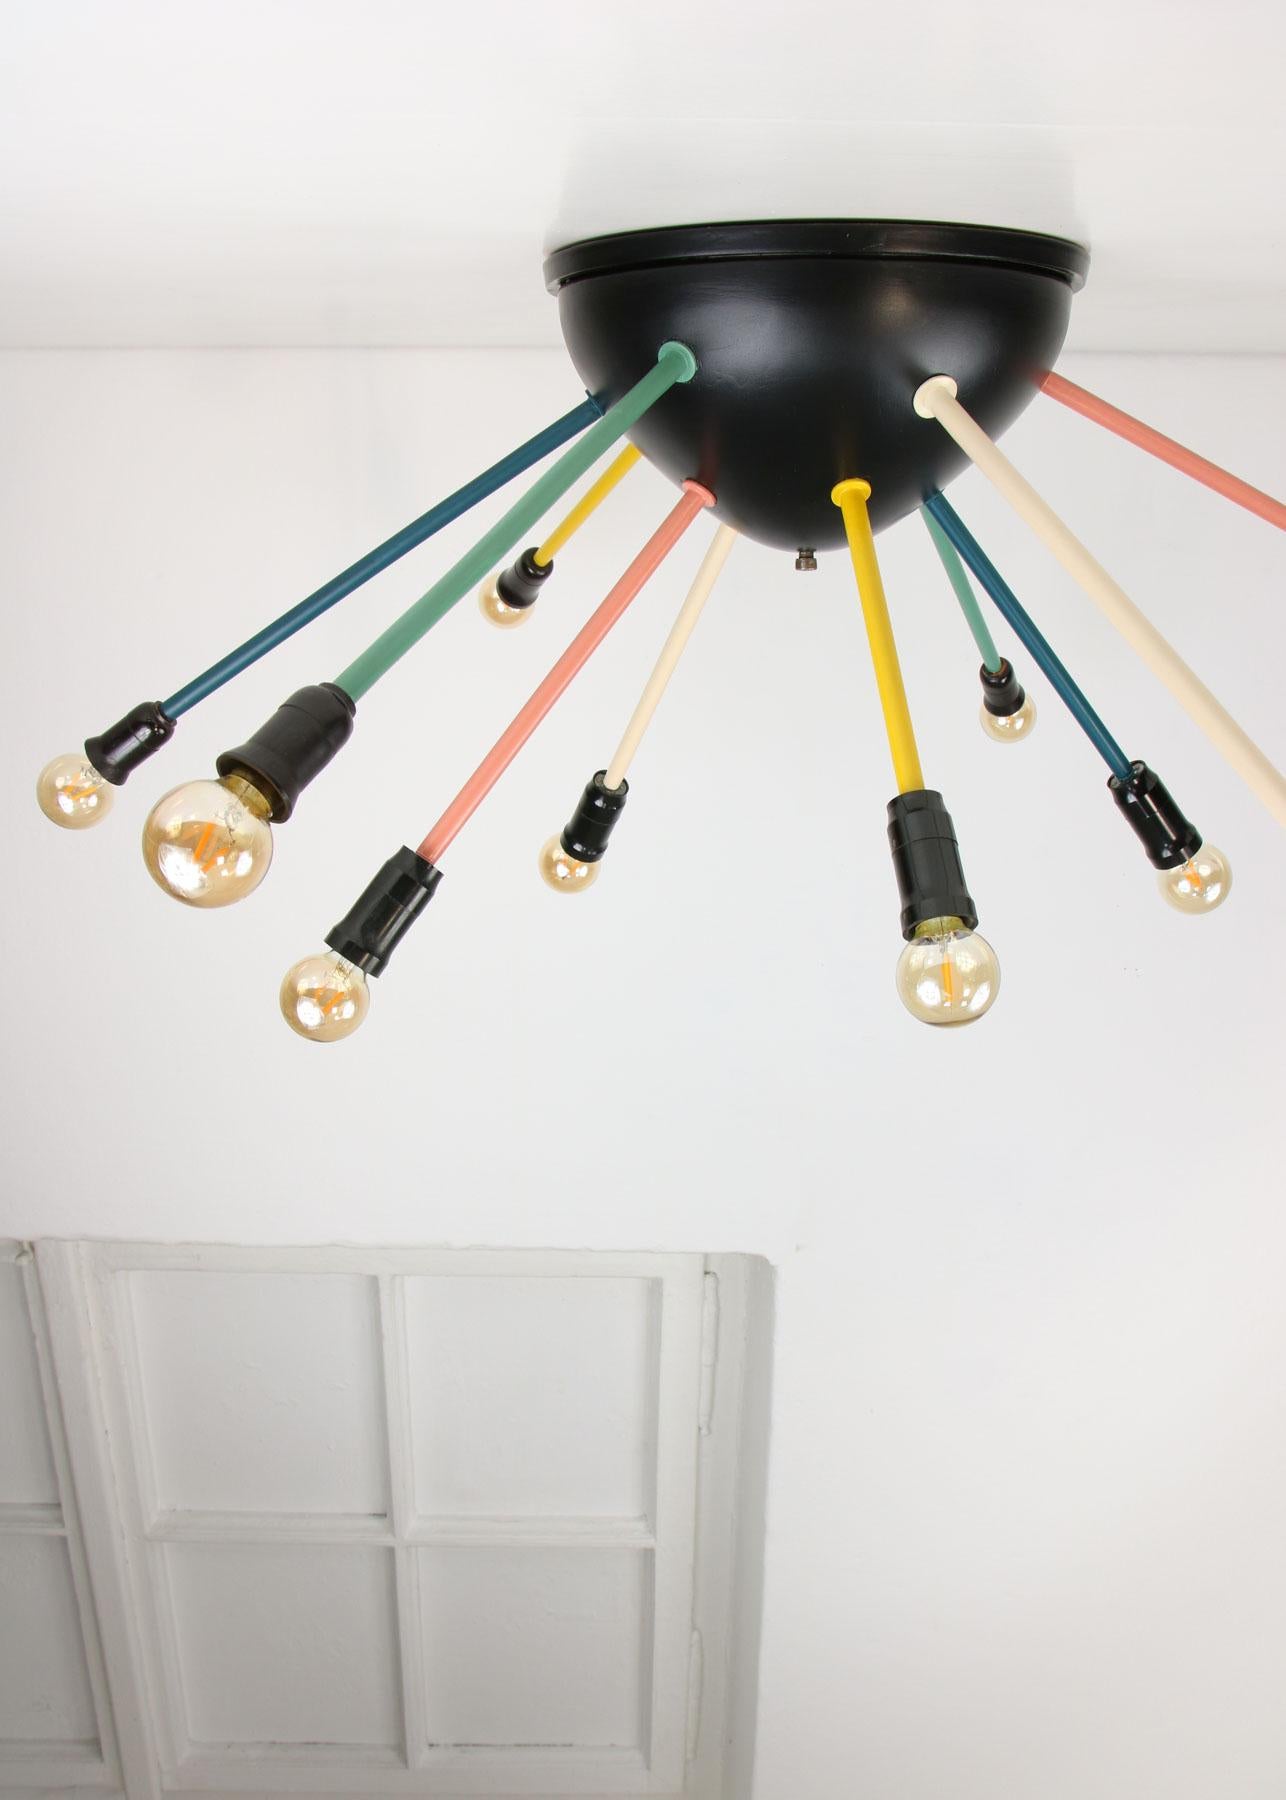 Die Lampenfassungen sind für europäische Standard-E14-Glühbirnen ausgelegt (nicht im Lieferumfang enthalten).

Für US-Kunden werden dem Paket kostenlos Adapter für Glühbirnen (E14 zu E12) beigelegt. Funktioniert sowohl mit 220 V als auch mit 110 V.